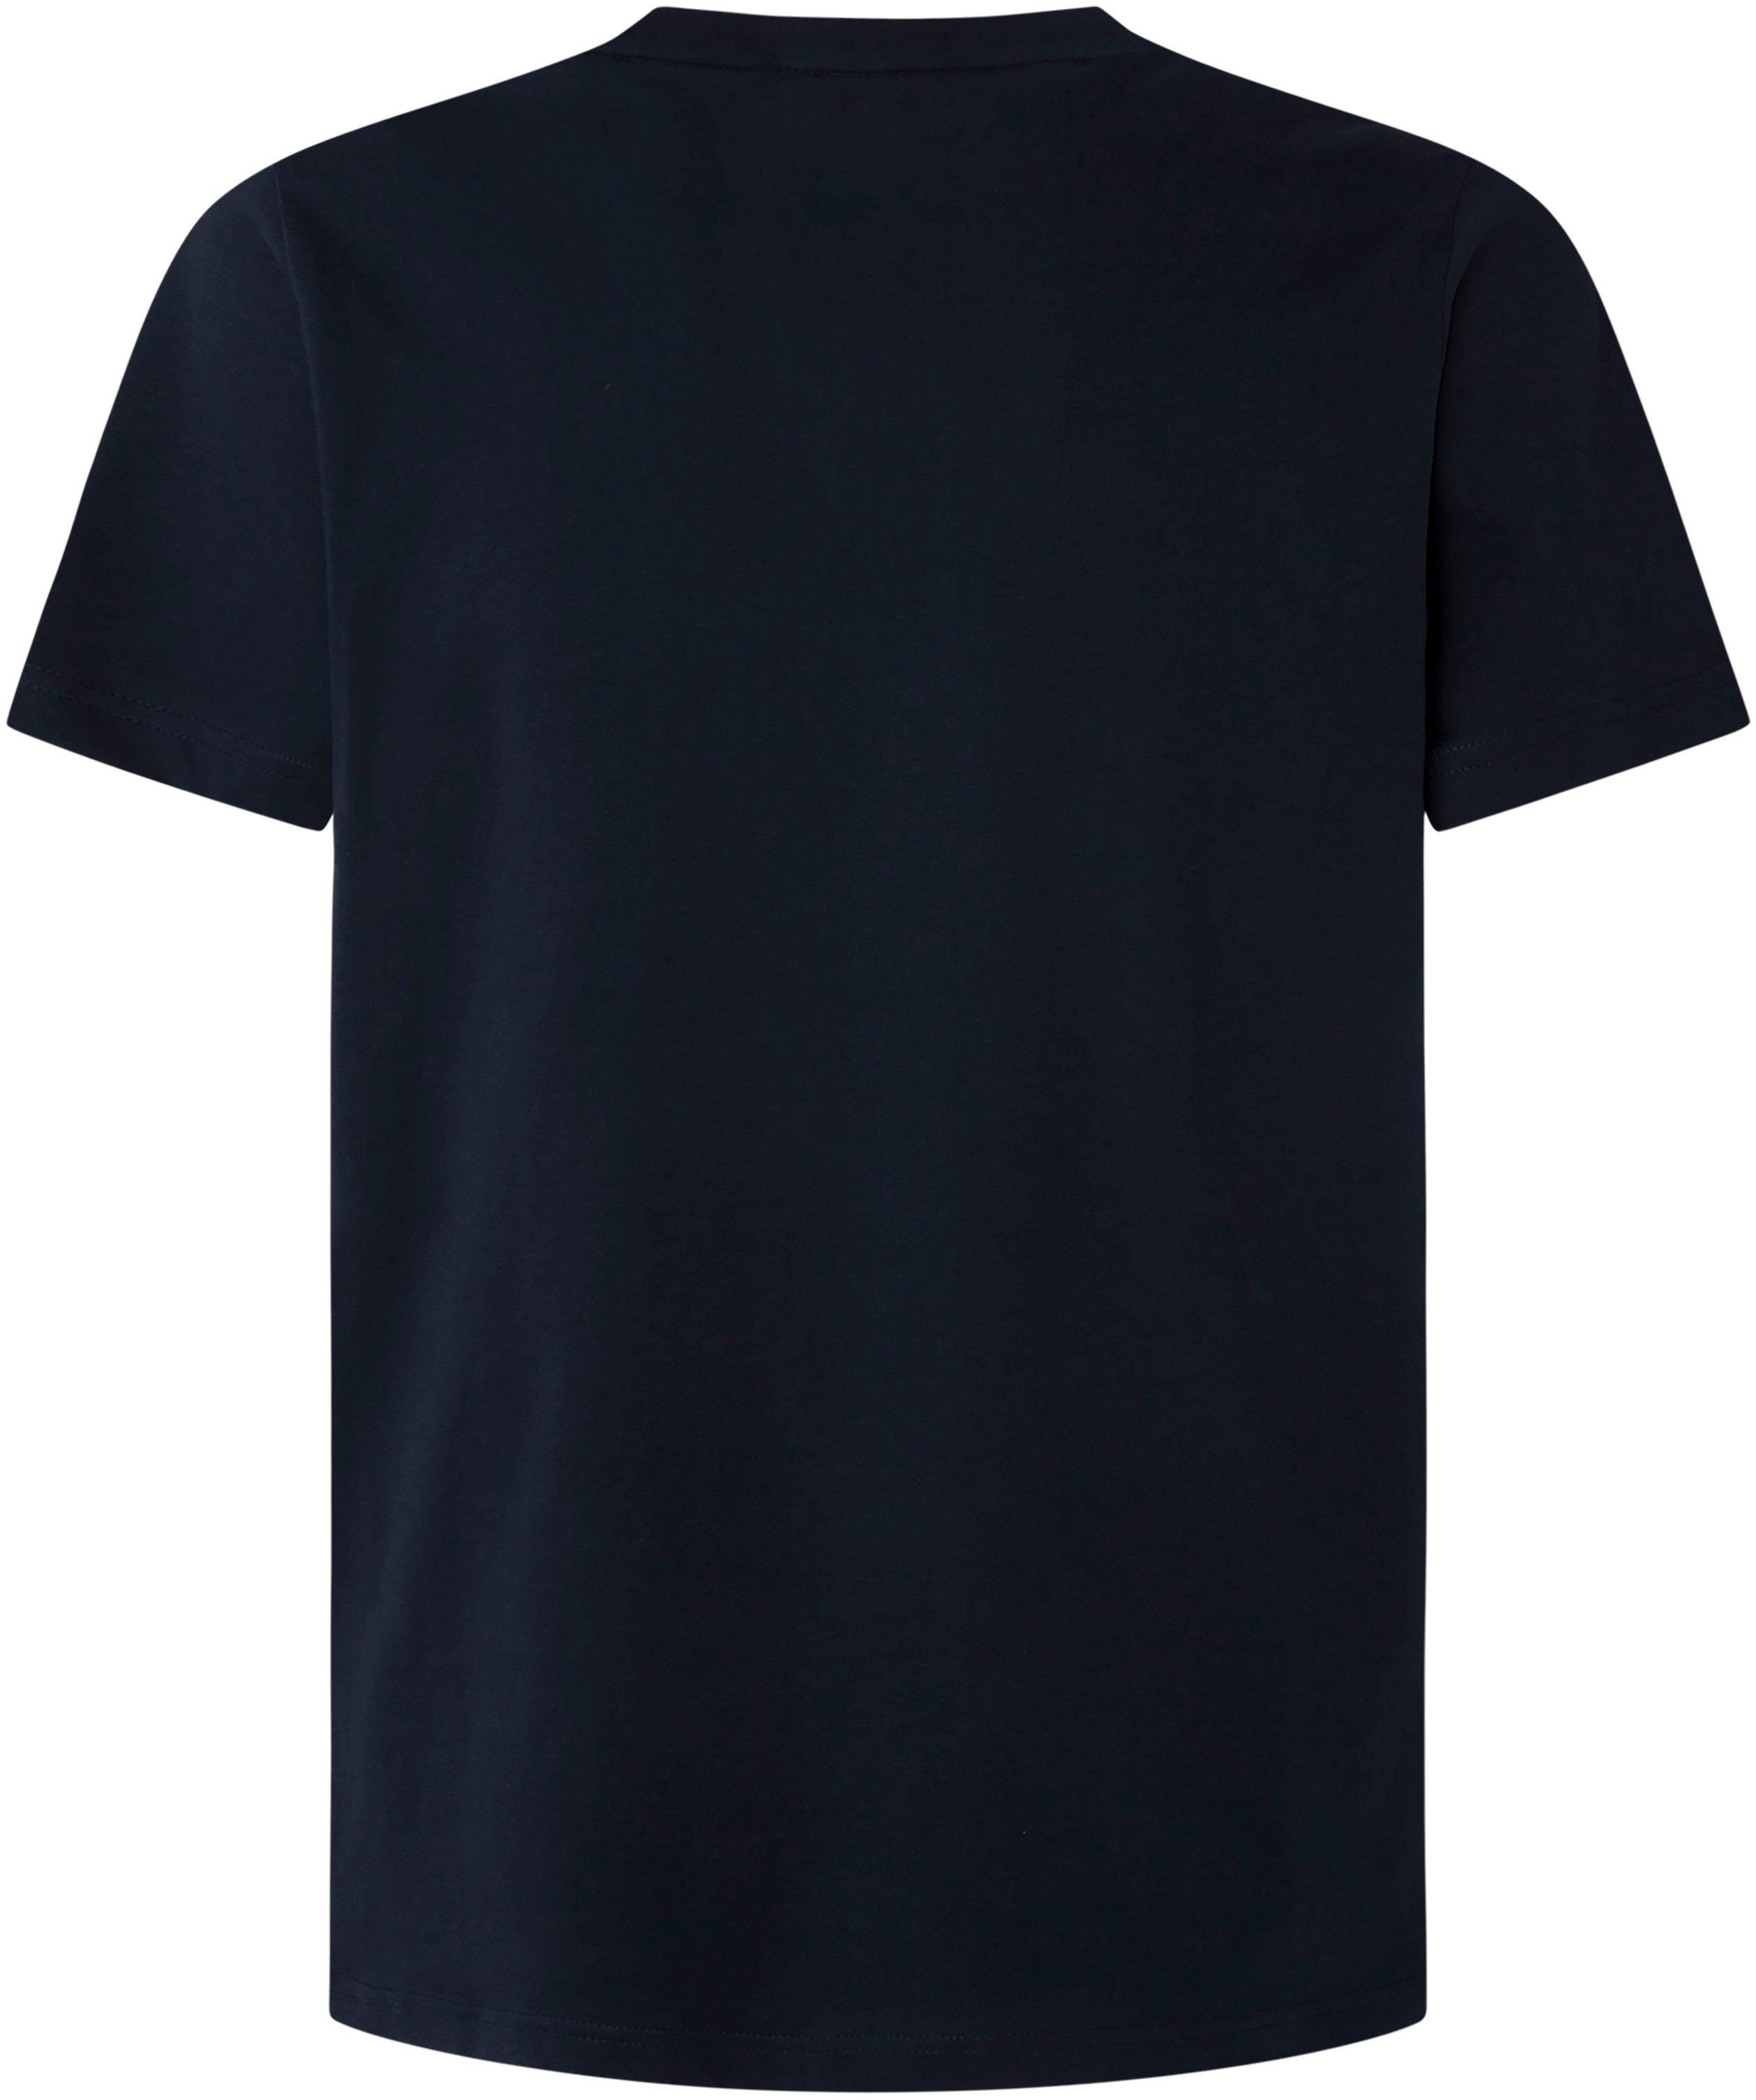 Pepe in T-shirt | de shop online OTTO Jeans